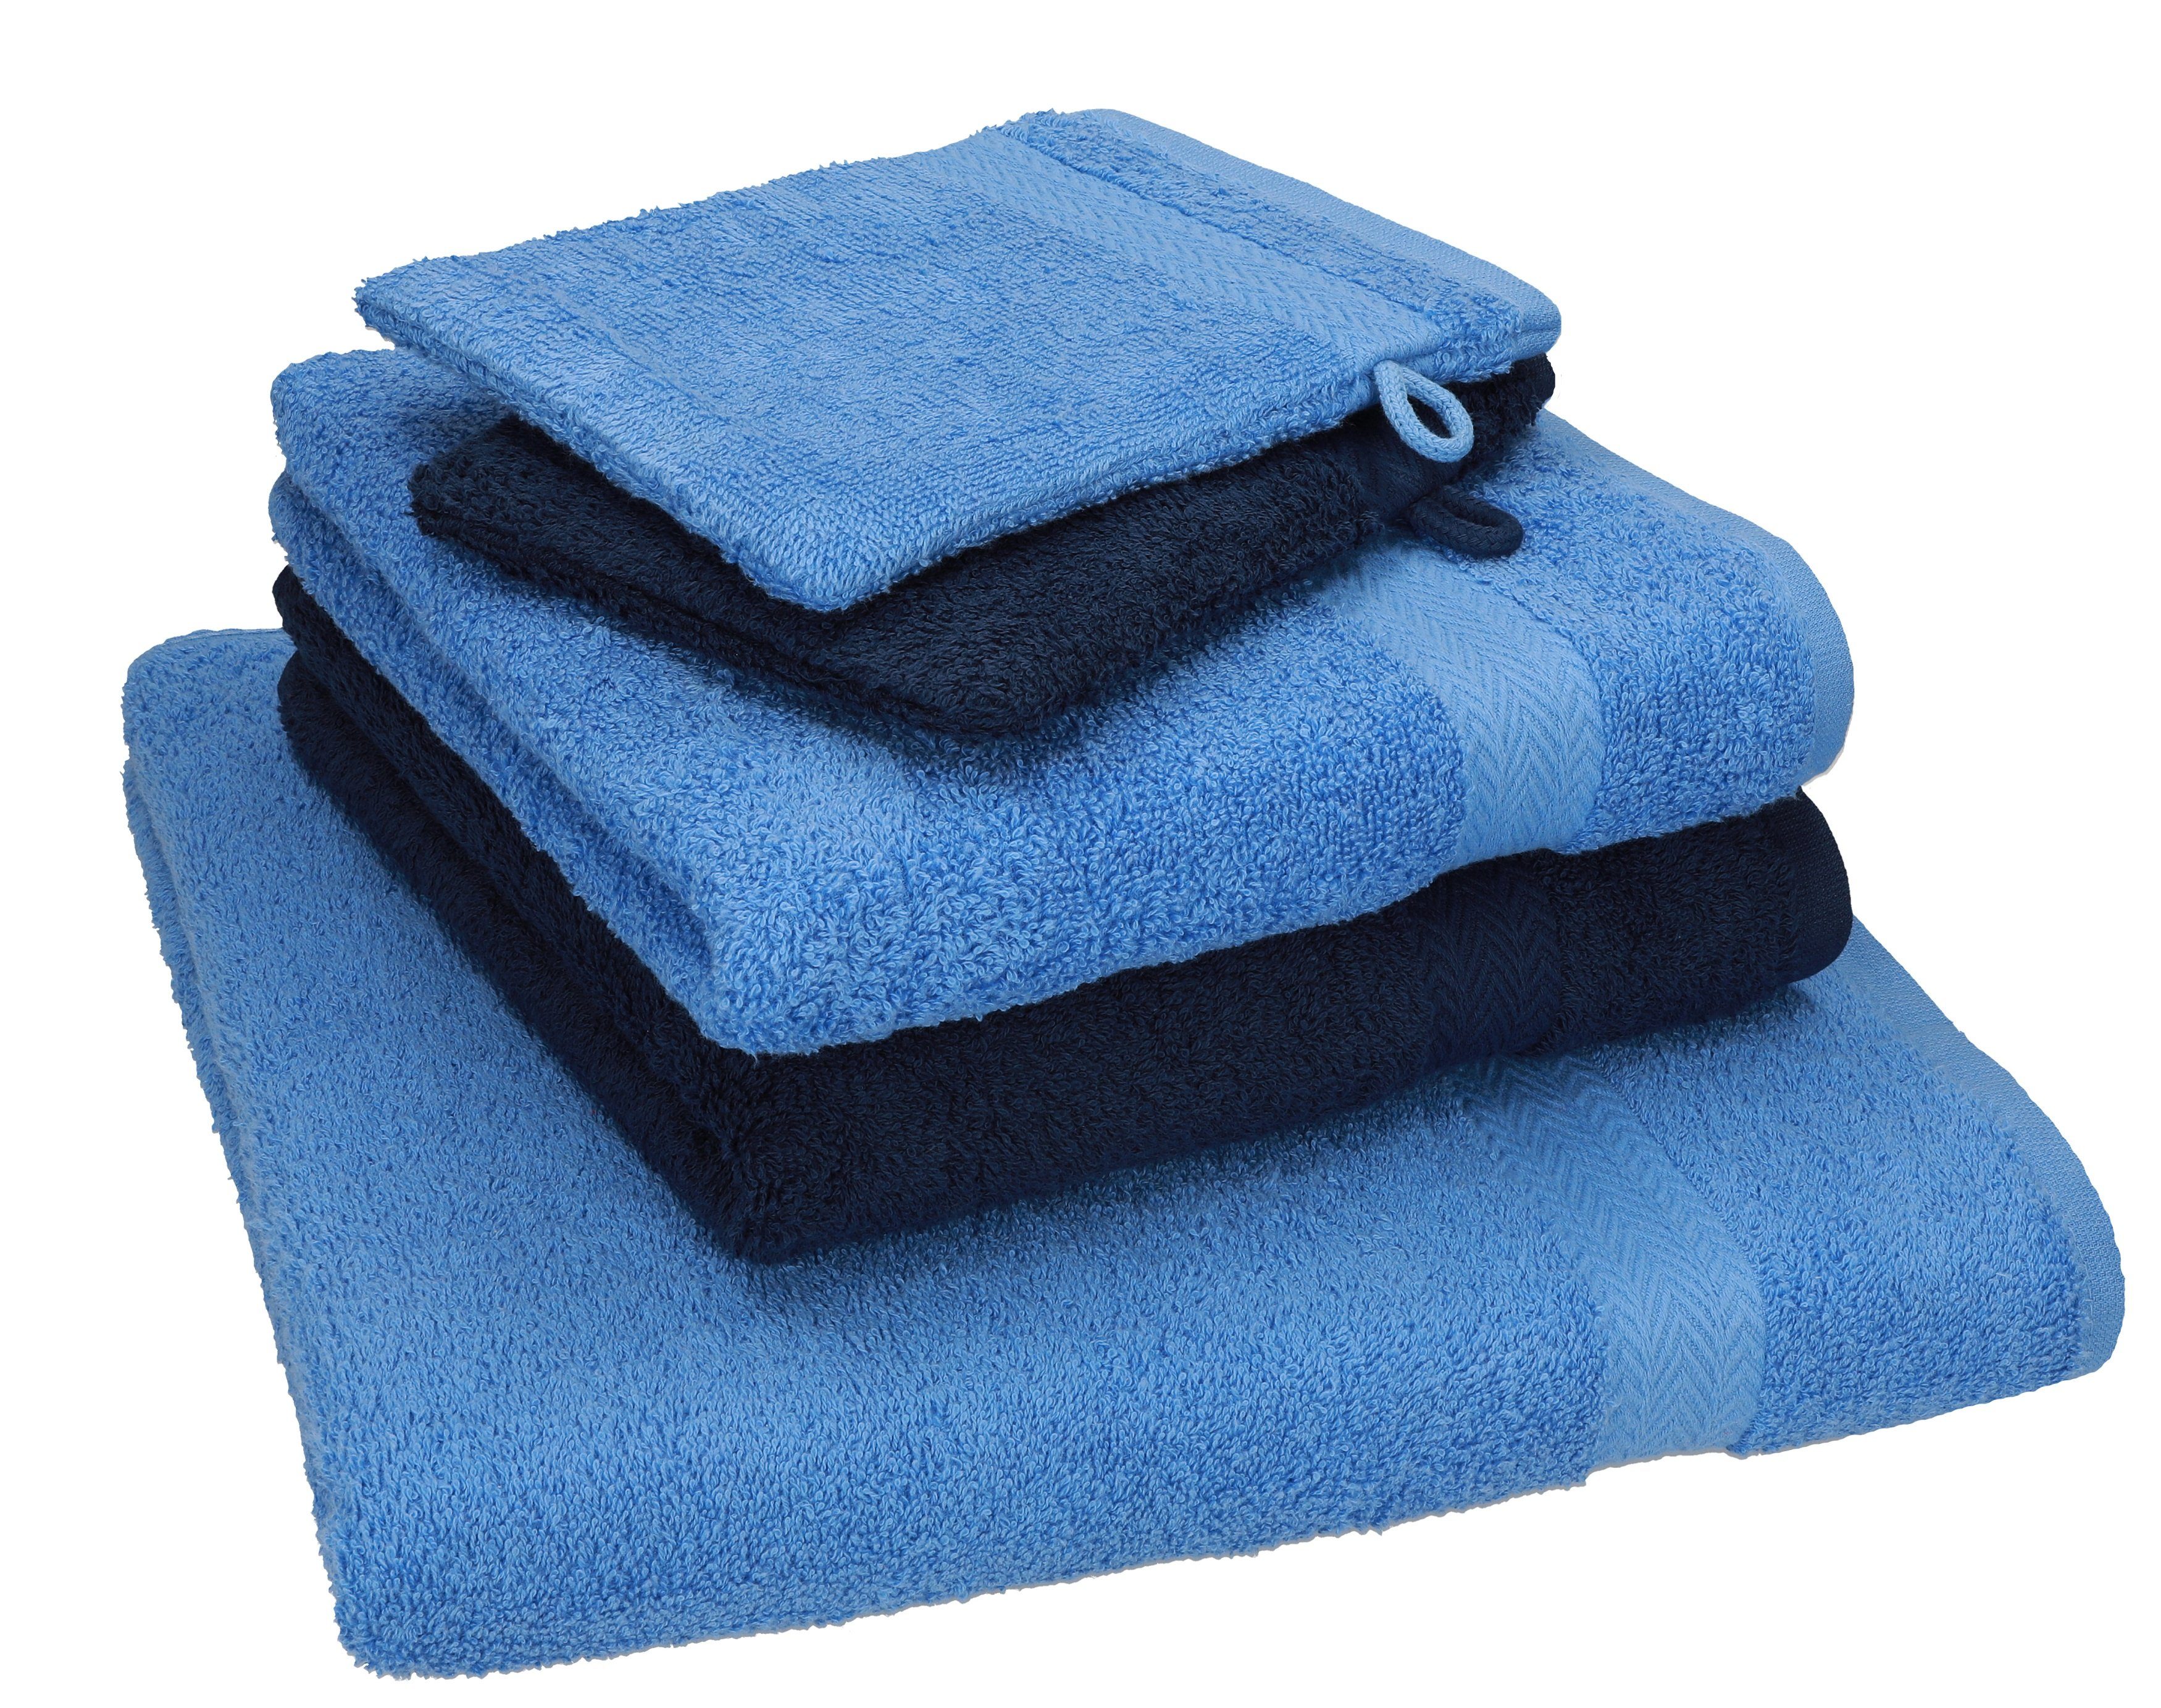 TLG. 5 Handtuch 2 2 Single 100% Pack Betz Duschtuch Baumwolle 1 Handtücher Handtuch Baumwolle hellblau-dunkelblau Waschhandschuhe, Set 100% Set